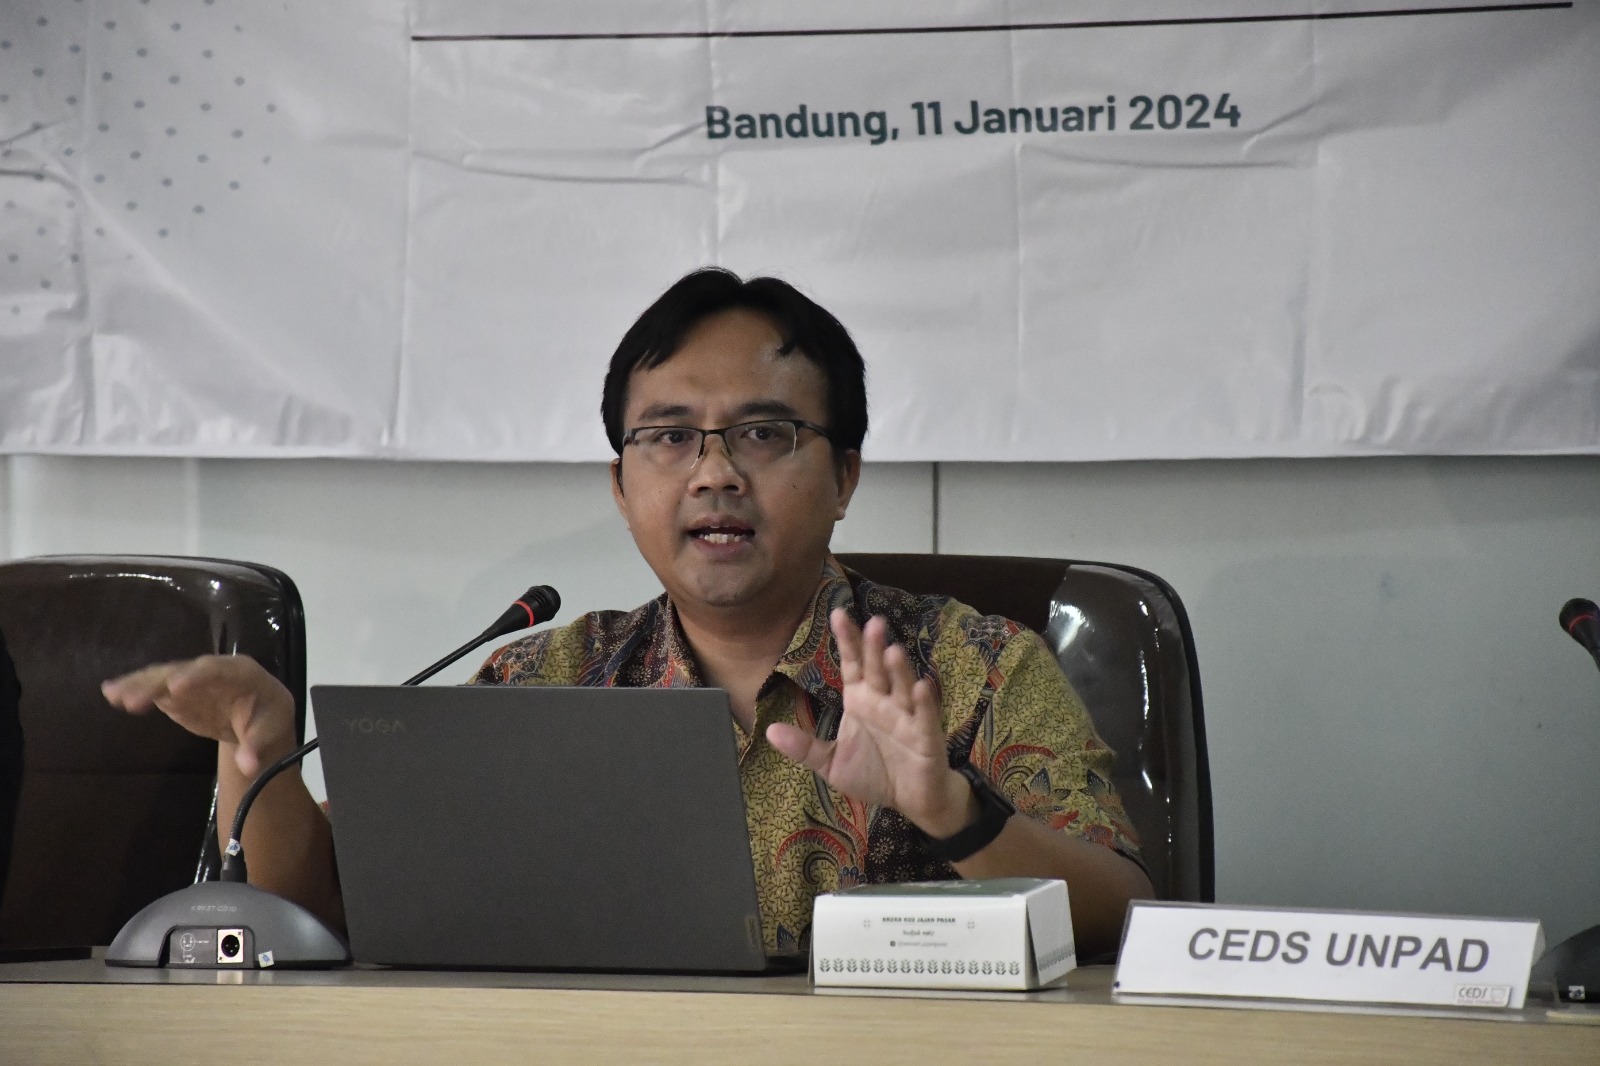 Indeks Persaingan Usaha Lampung Tahun 2023 Masuk Kategori Sedang Tinggi